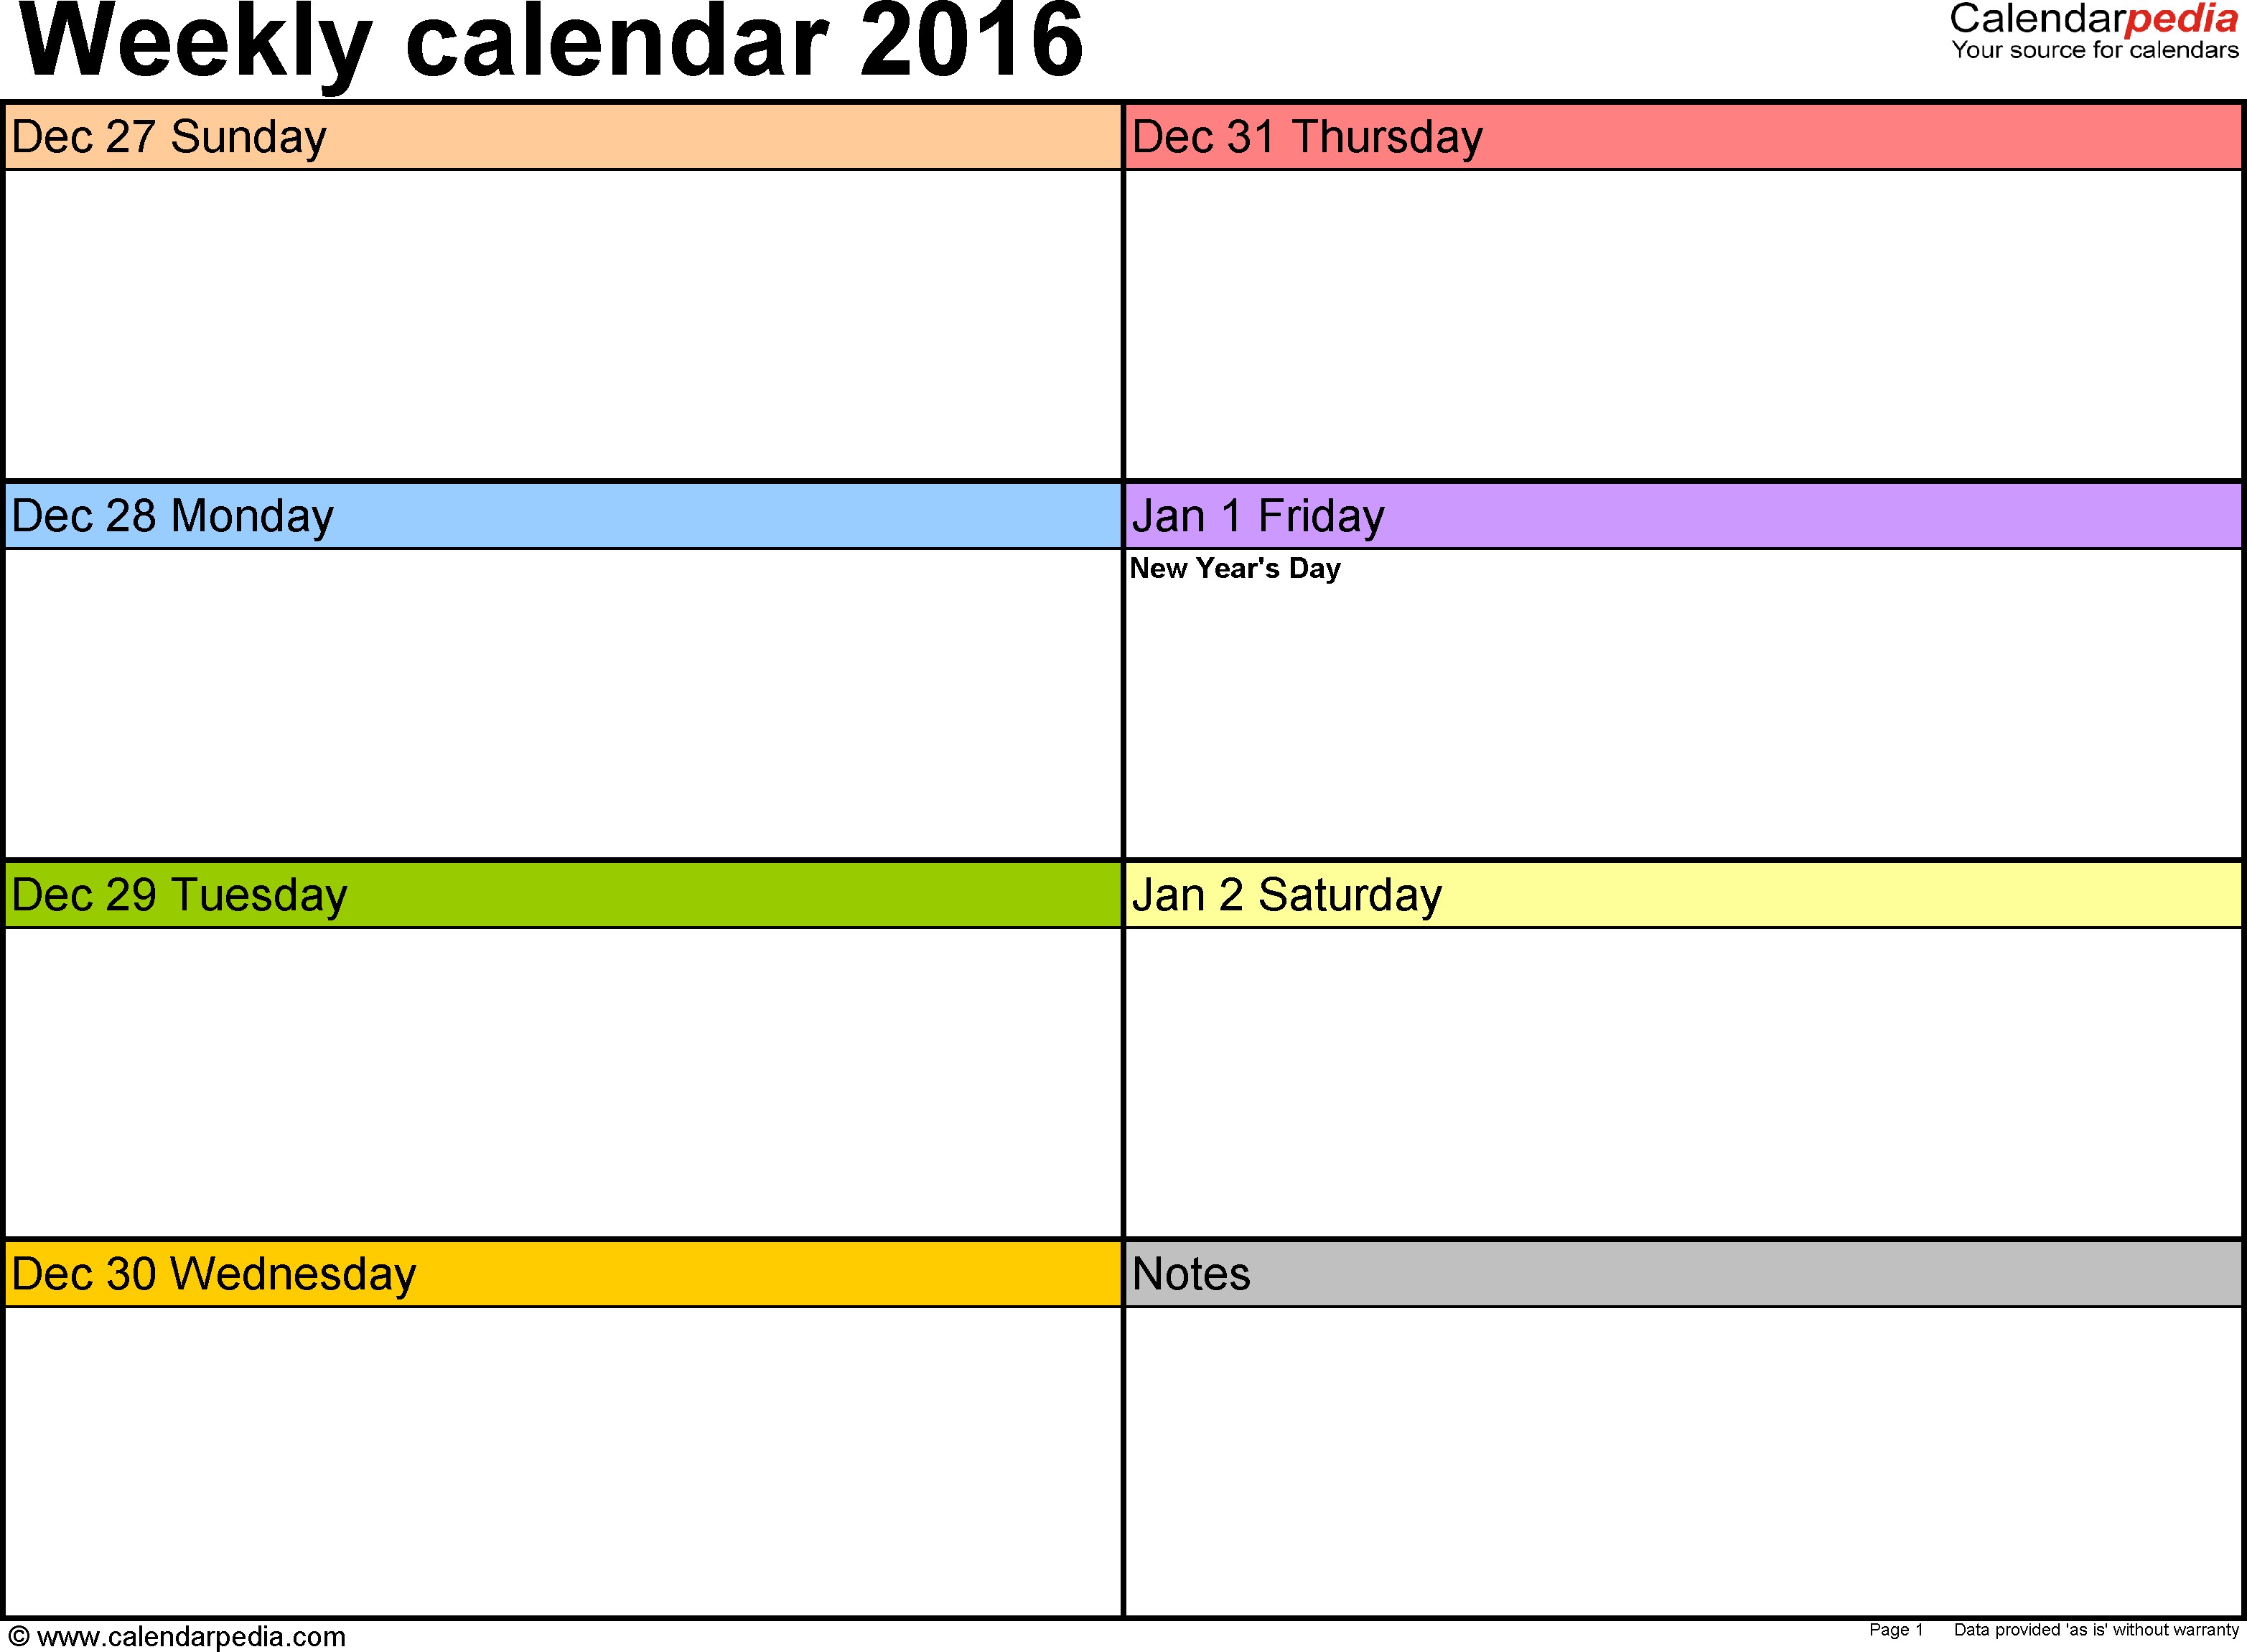 Free Printable Weekly Calendar Template Weekly Calendar 2016 for Pdf 12 Free Printable Templates